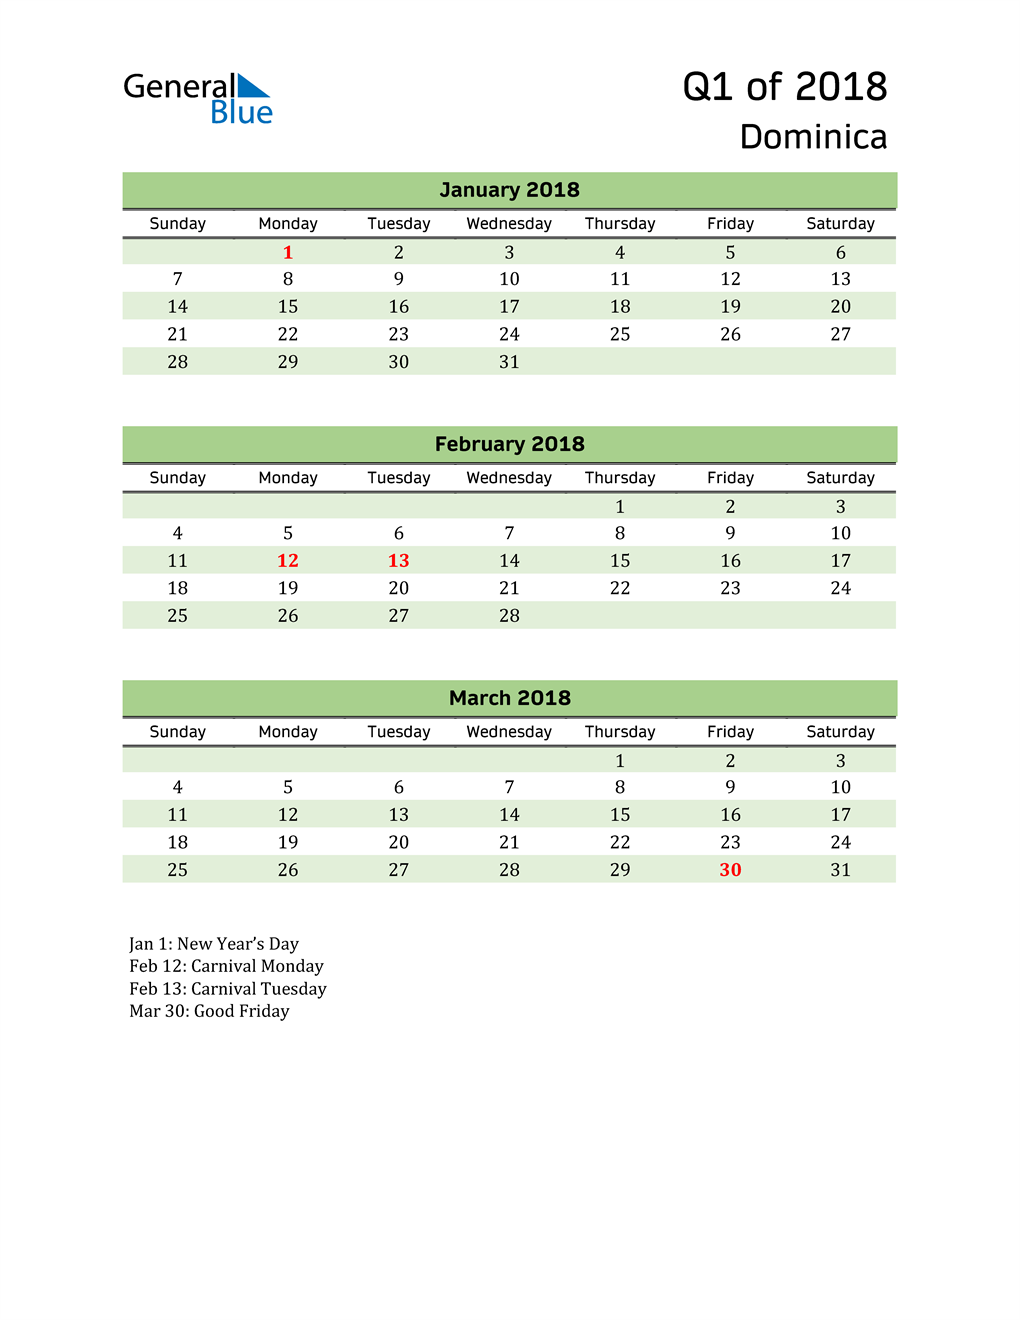  Quarterly Calendar 2018 with Dominica Holidays 